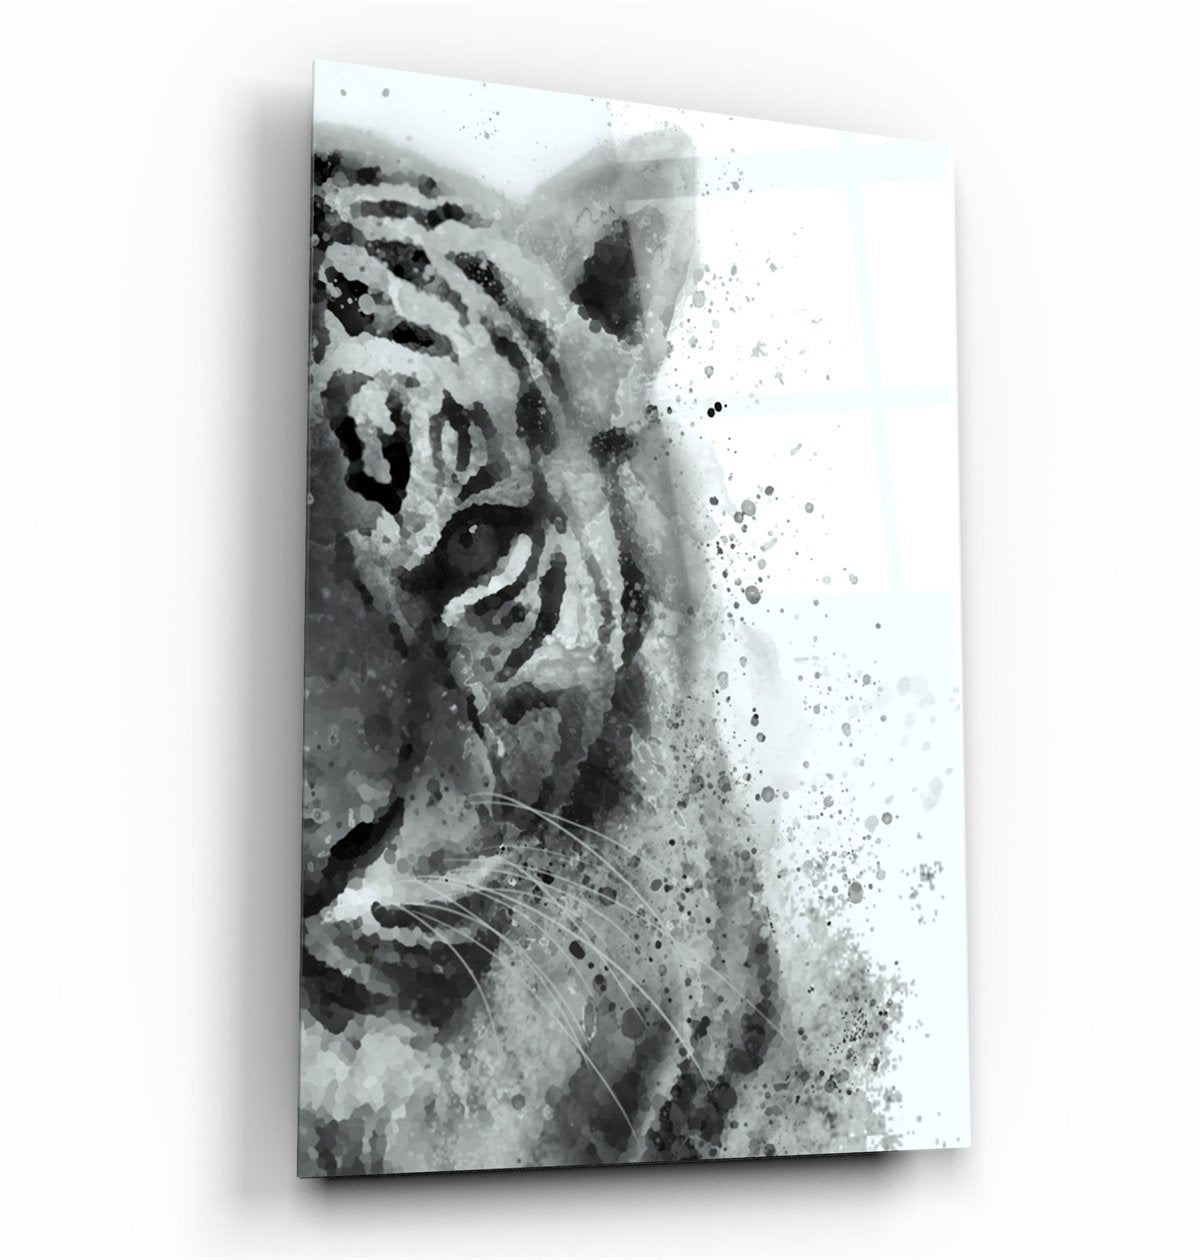 ・"Tiger 6"・Glass Wall Art